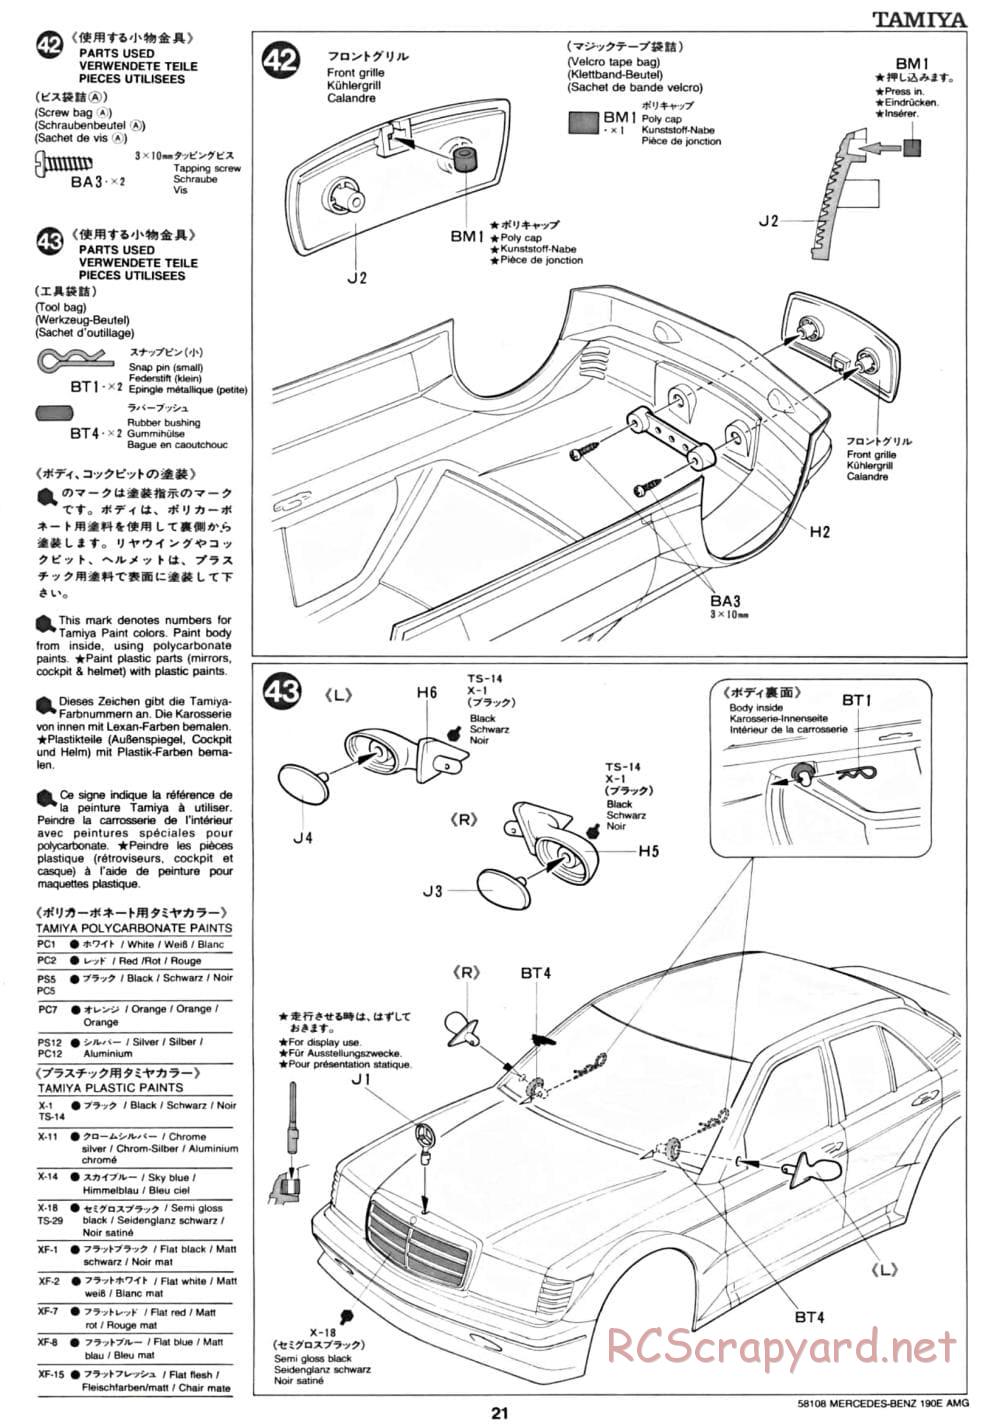 Tamiya - Mercedes Benz 190E Evo.II AMG - TA-01 Chassis - Manual - Page 21